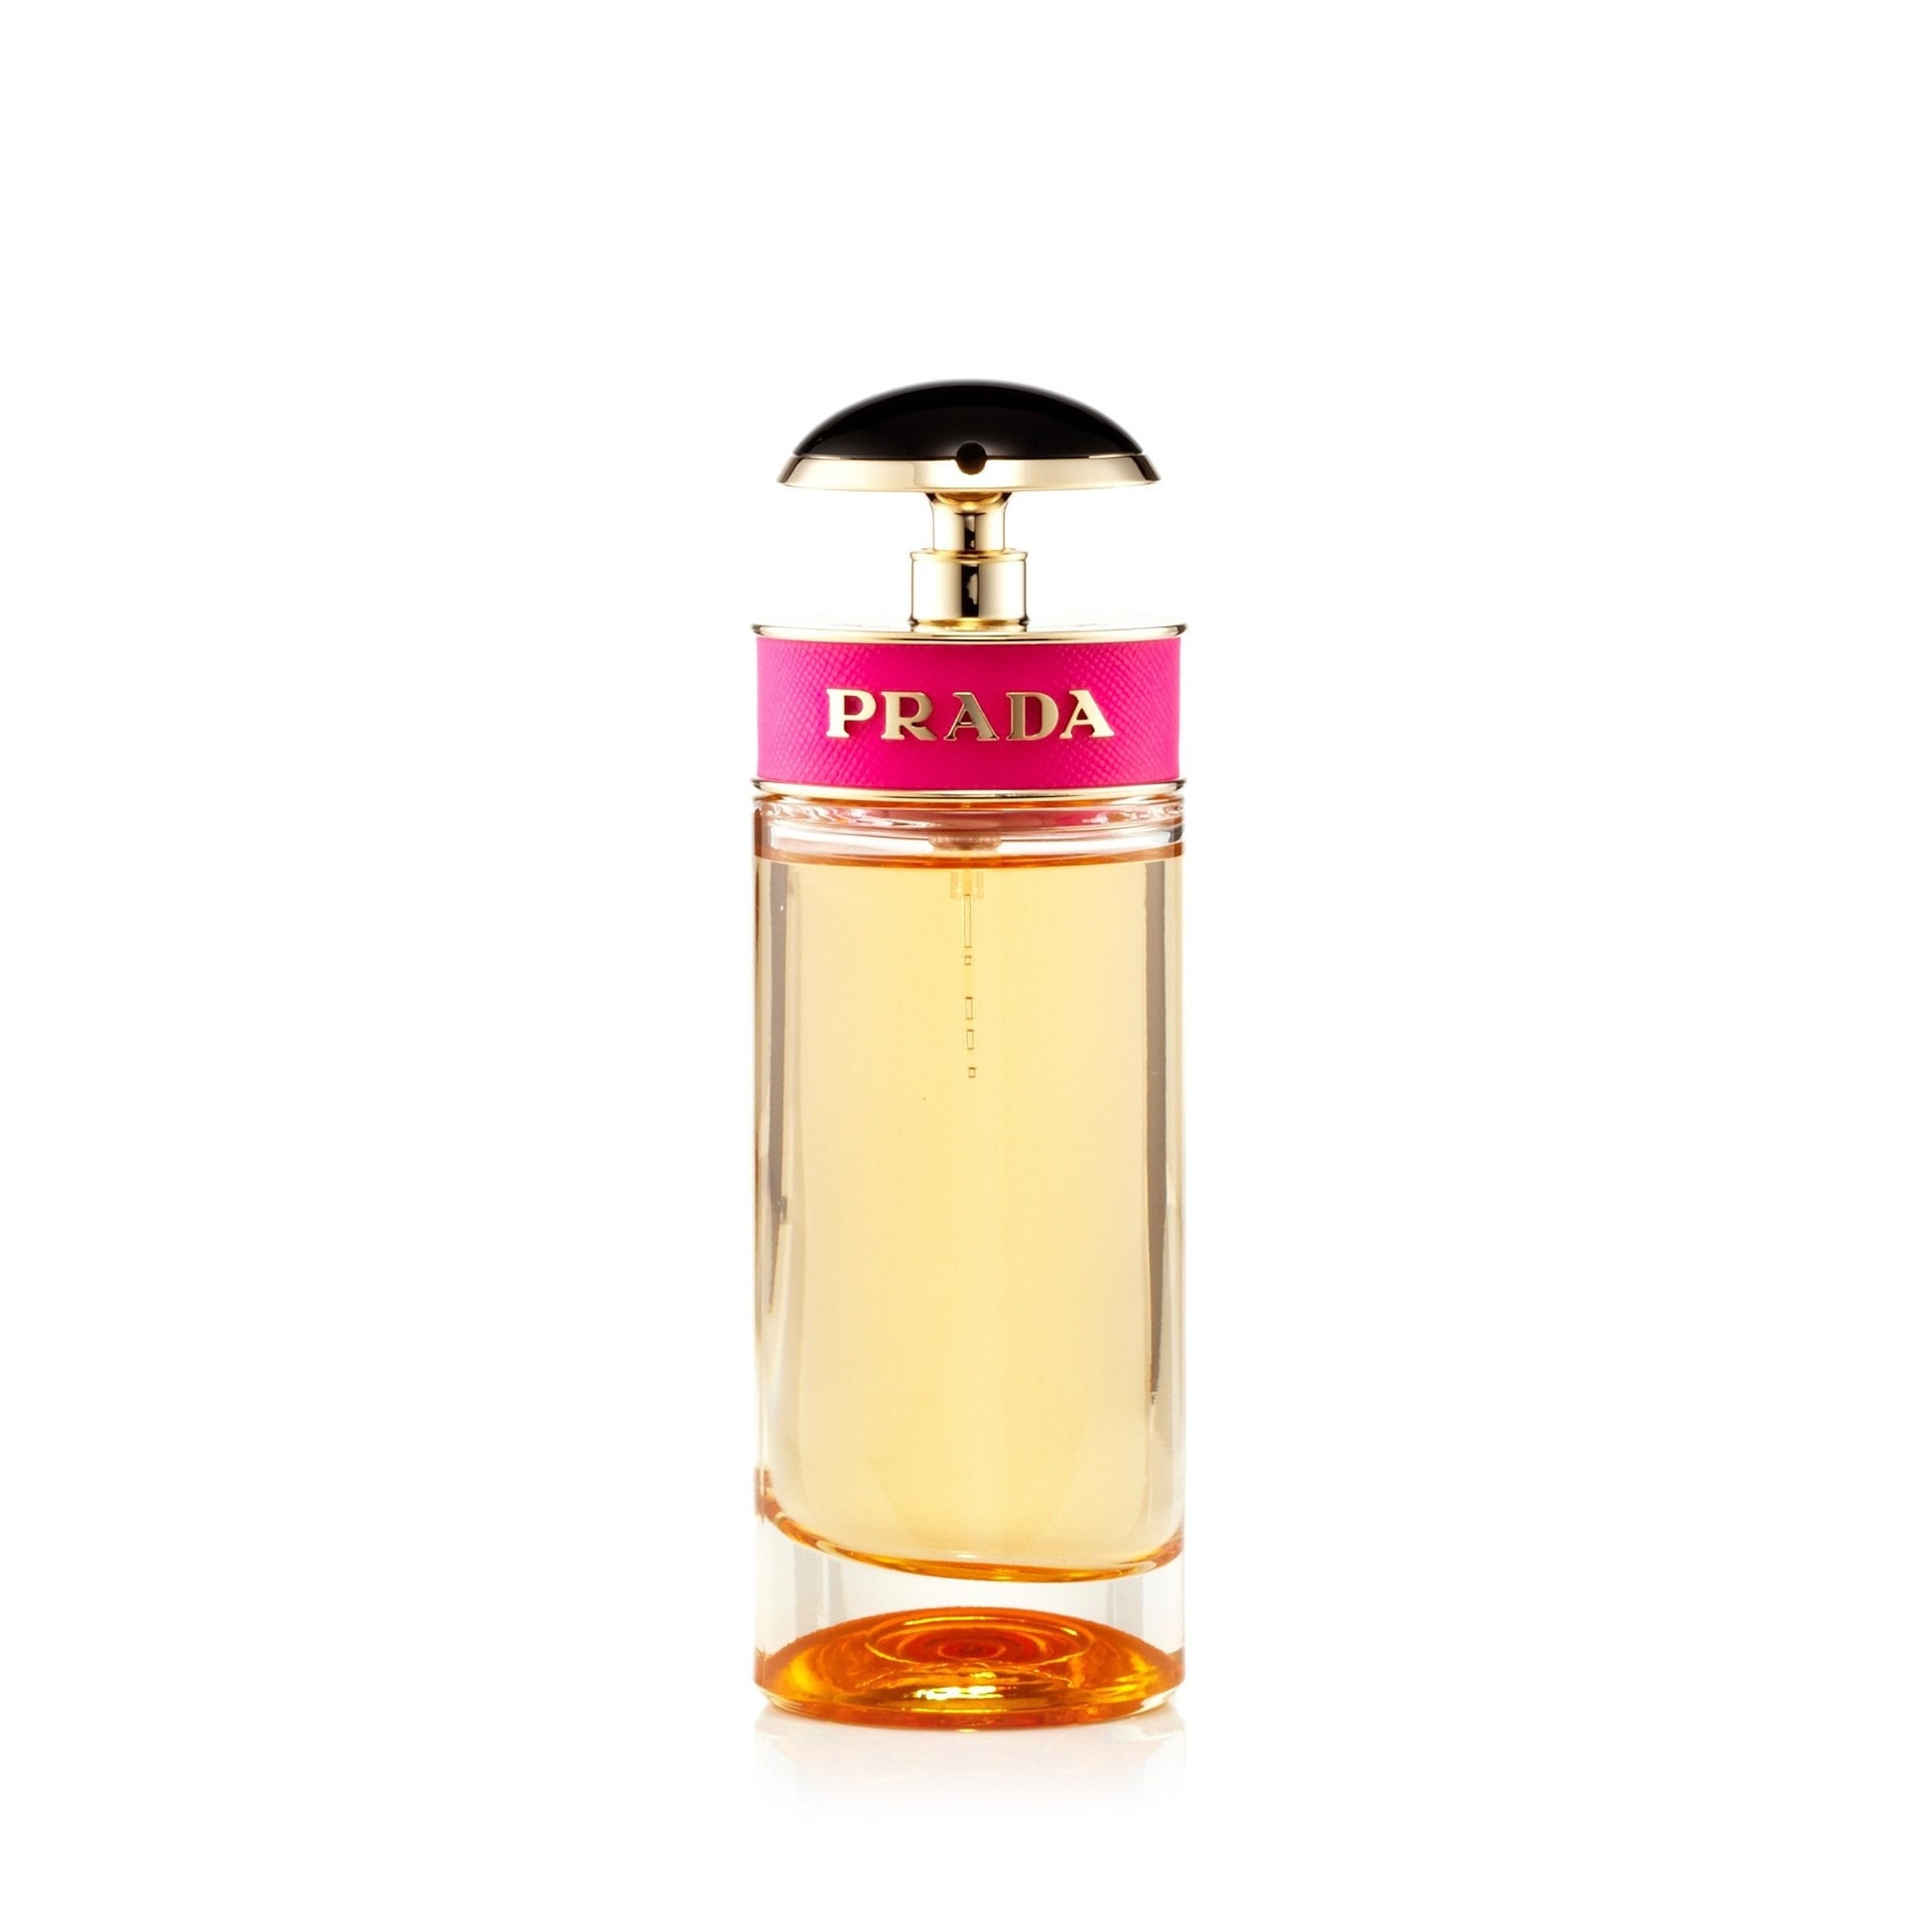 Prada Candy Eau de Parfum Womens Spray 2.7 oz.  Click to open in modal